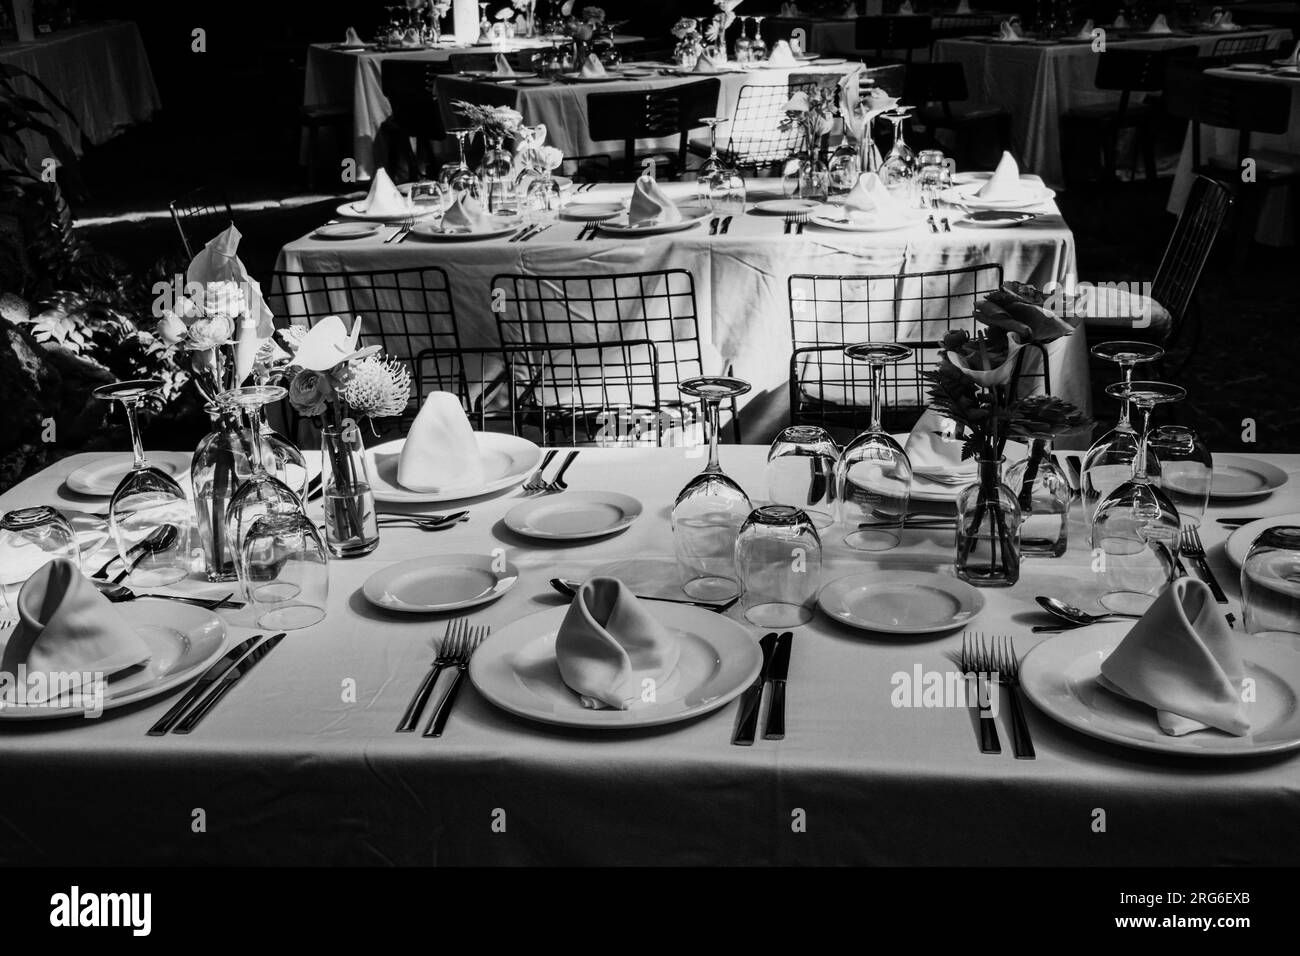 Wunderschön angelegte Tische mit Gläsern, Besteck und Geschirr für eine große Feier vorbereitet. Schwarzweißfotografie. Stockfoto